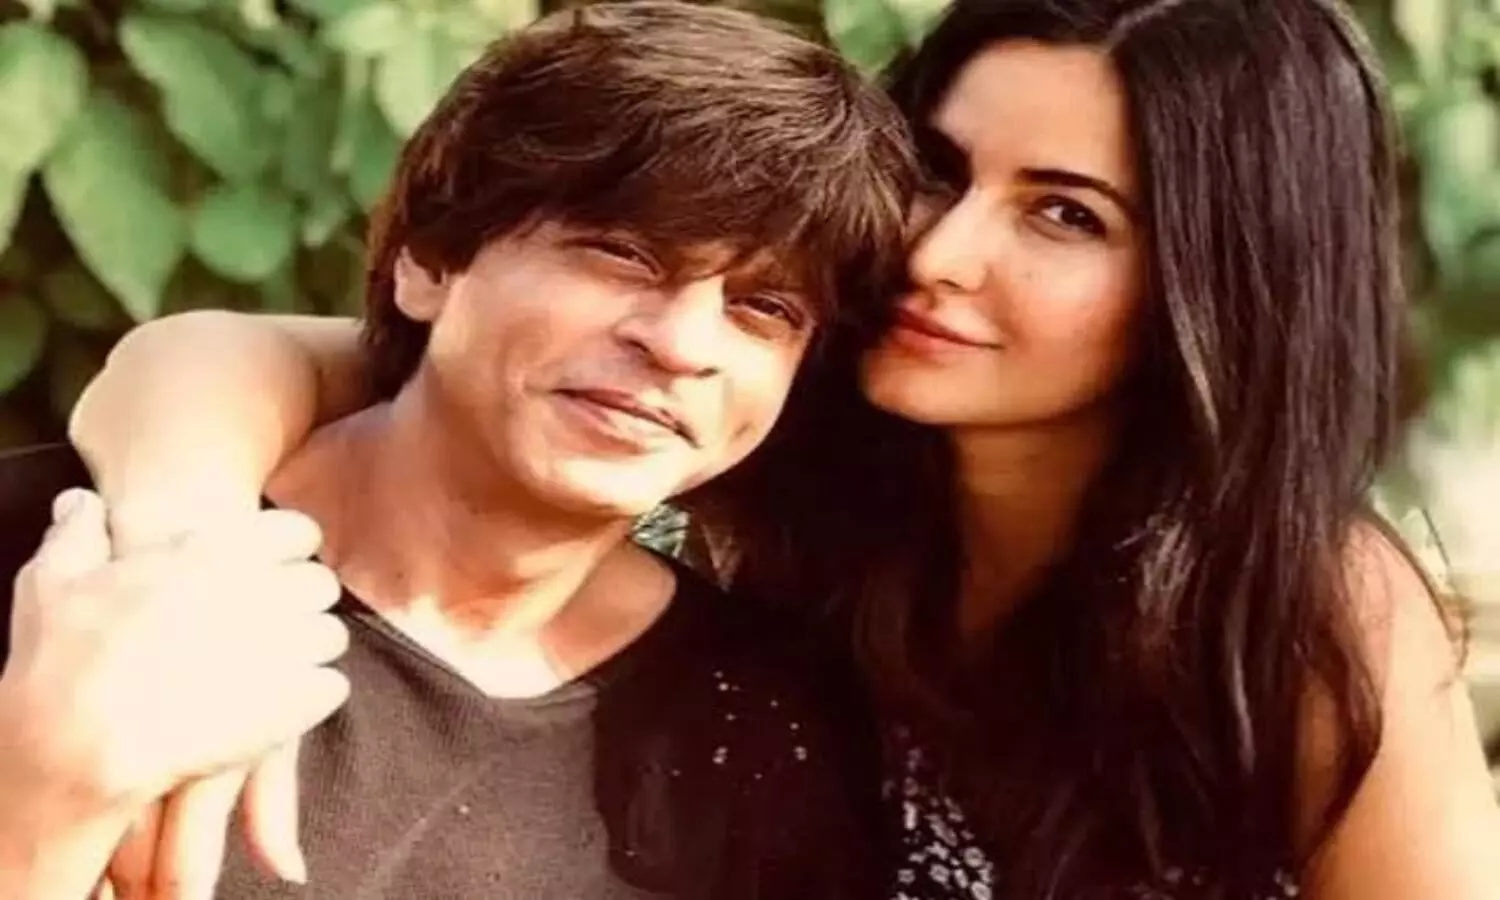 बीटीएस वीडियो में Shahrukh Khan और Katrina Kaif को मस्ती करते देखा गया है, फिल्म जीरो के कास्ट